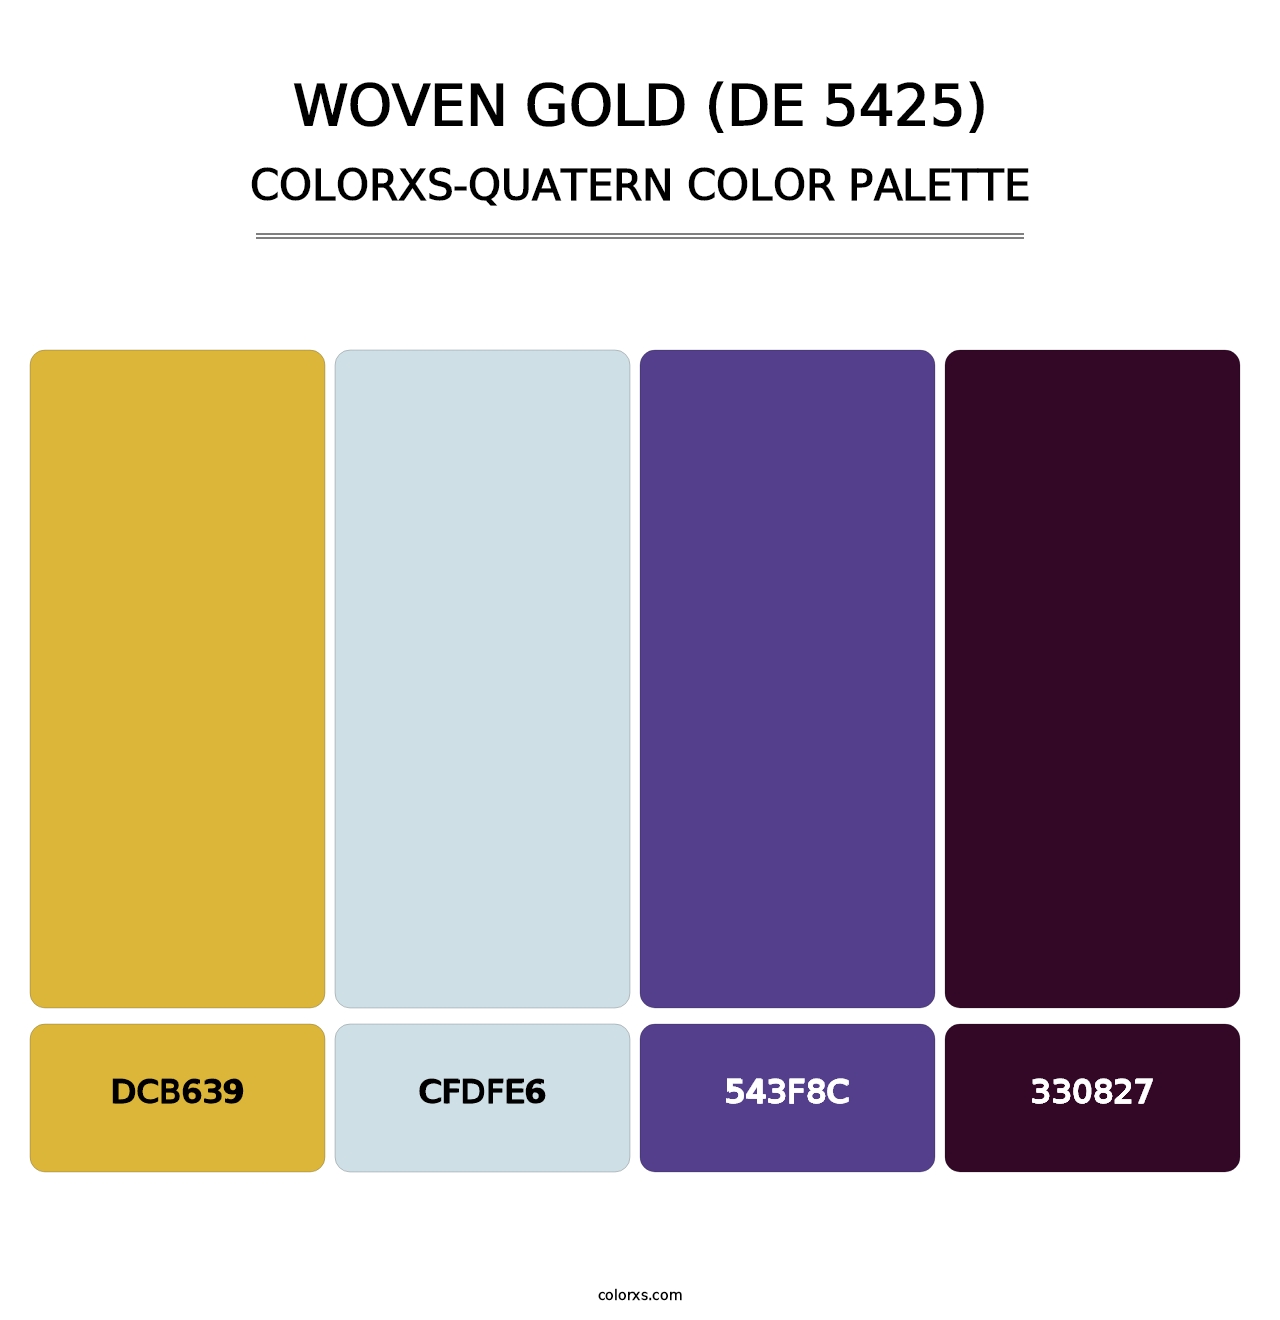 Woven Gold (DE 5425) - Colorxs Quatern Palette